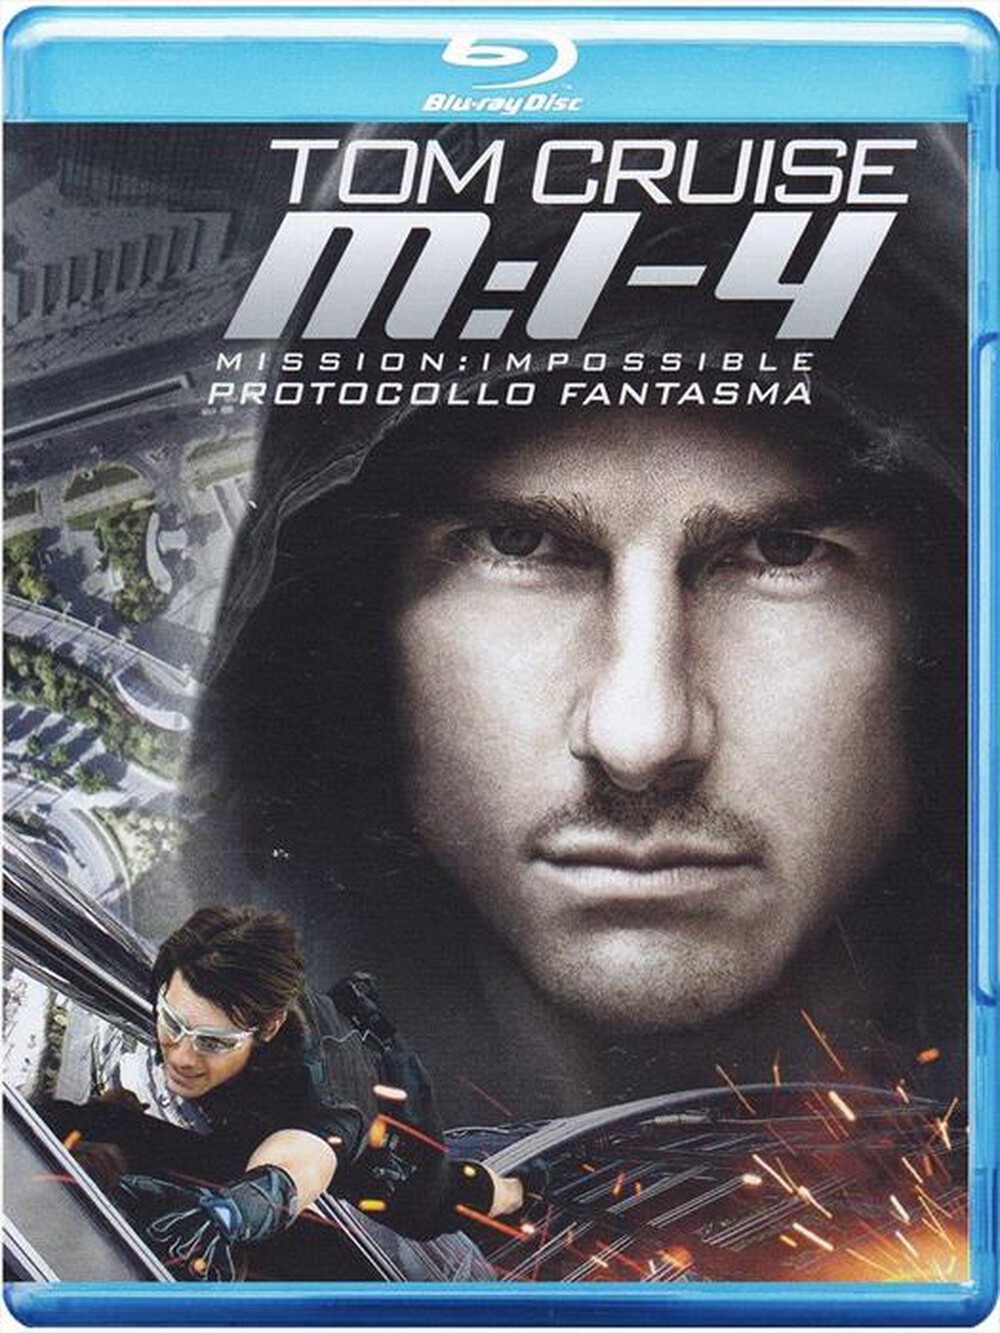 "PARAMOUNT PICTURE - Mission Impossible - Protocollo Fantasma"